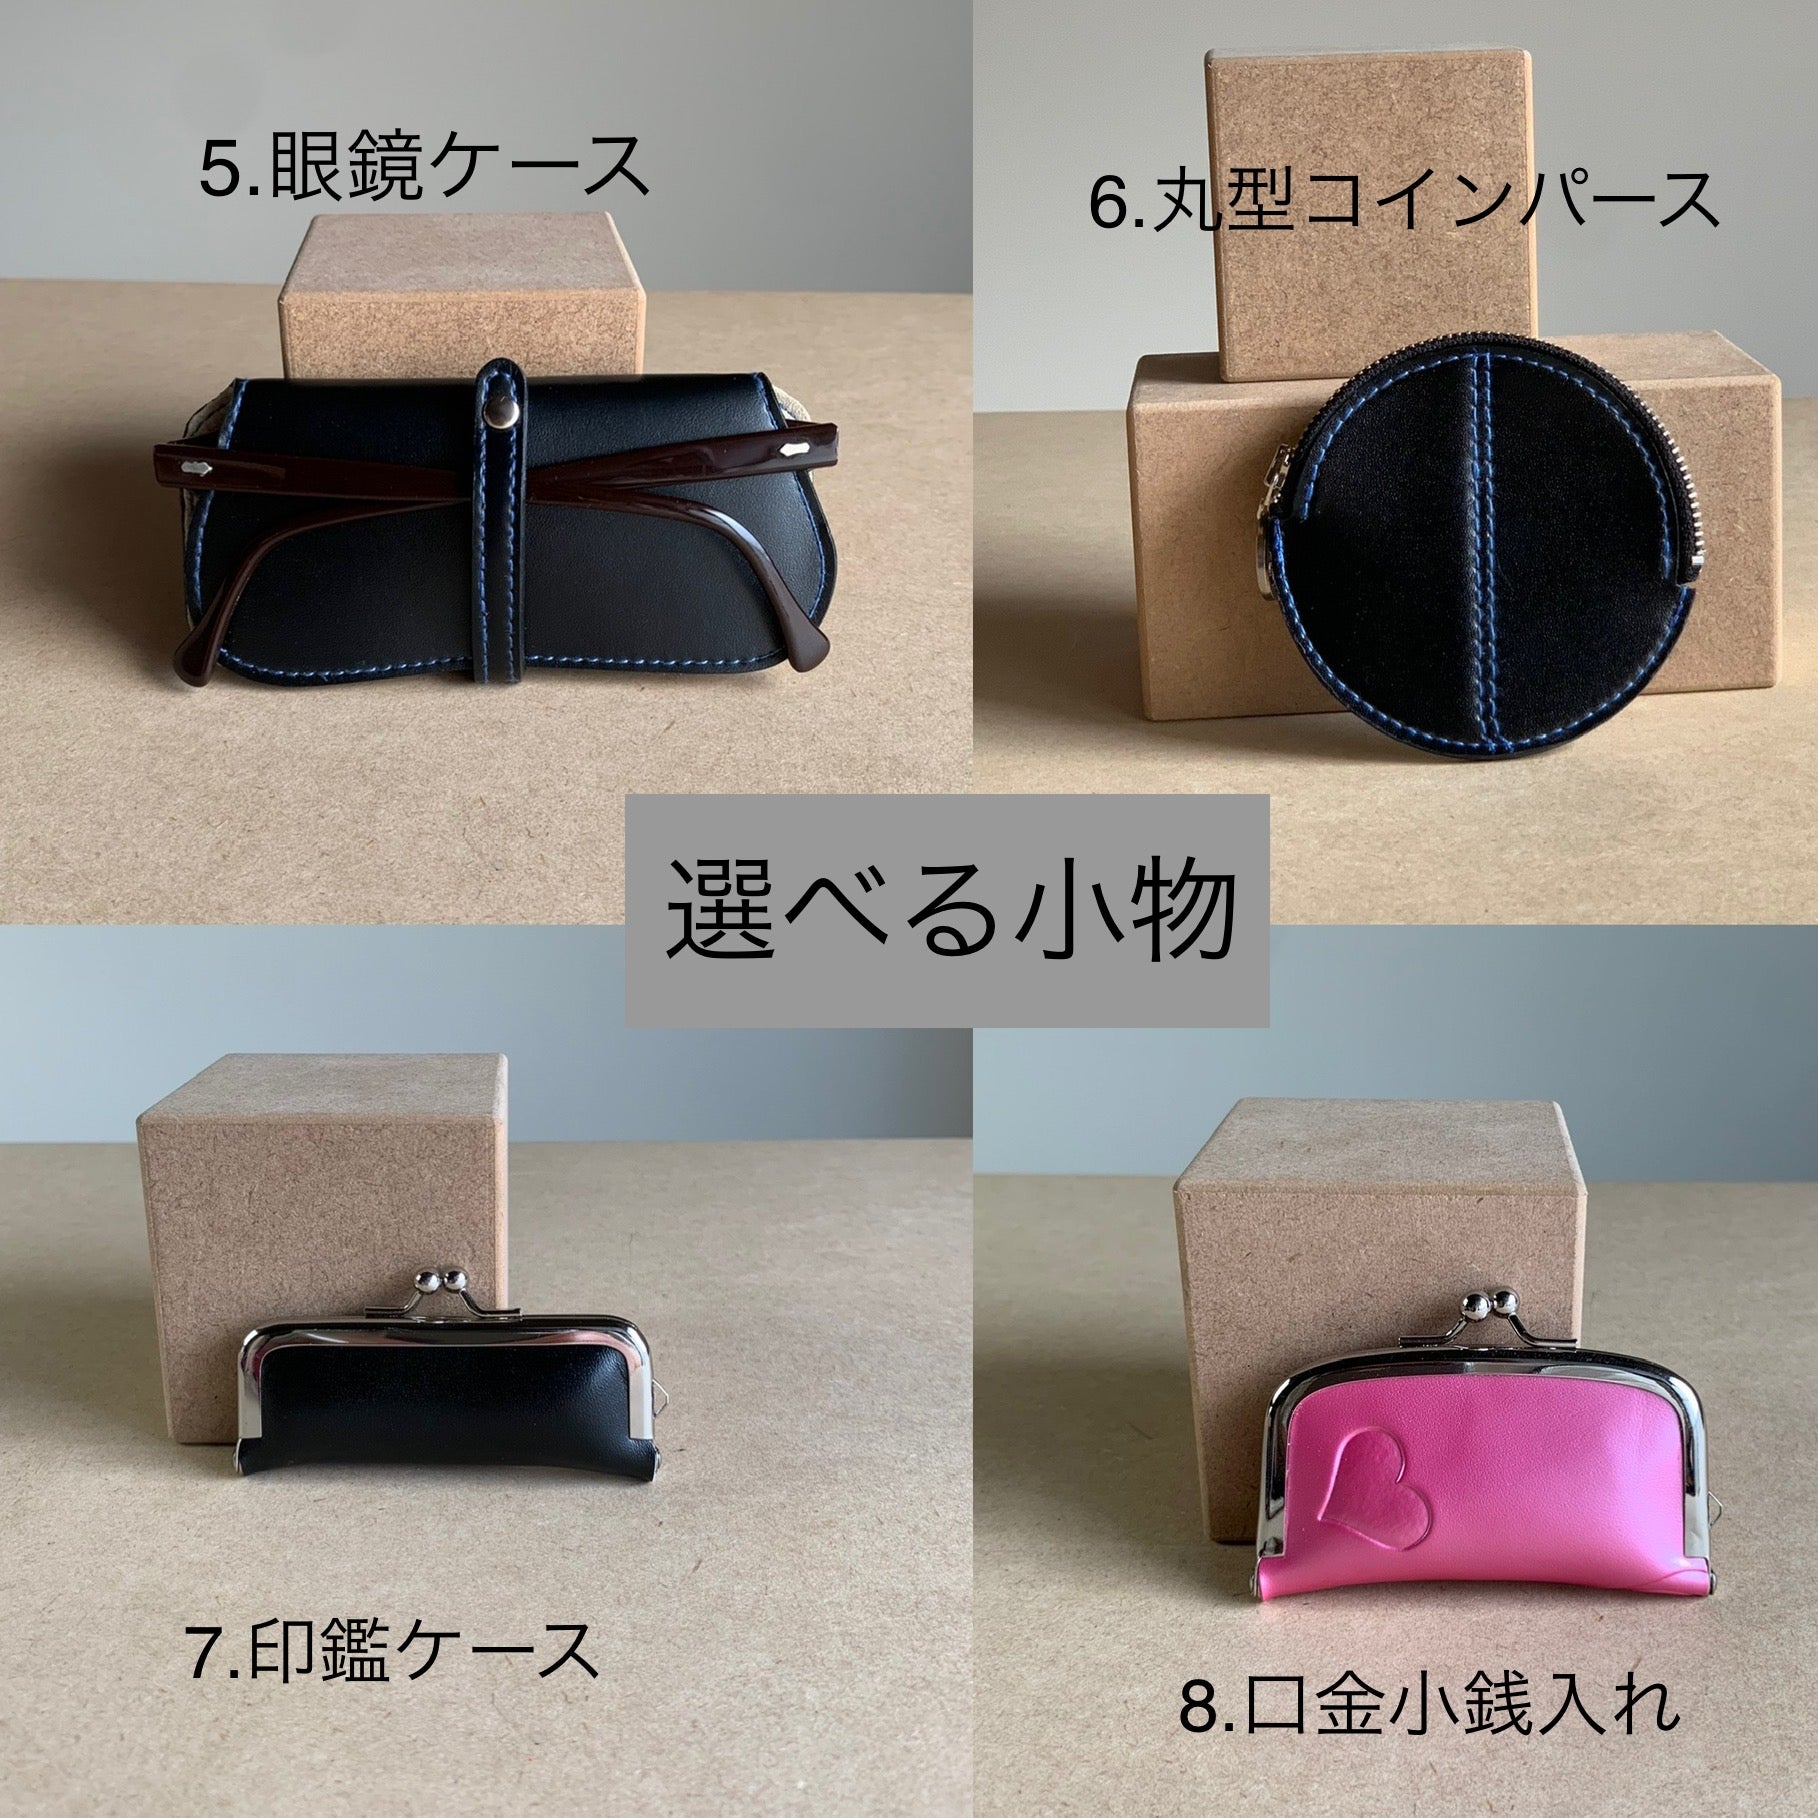 折り財布と選べる小物5点セット』-【西山ランドセルリメイク製作所】